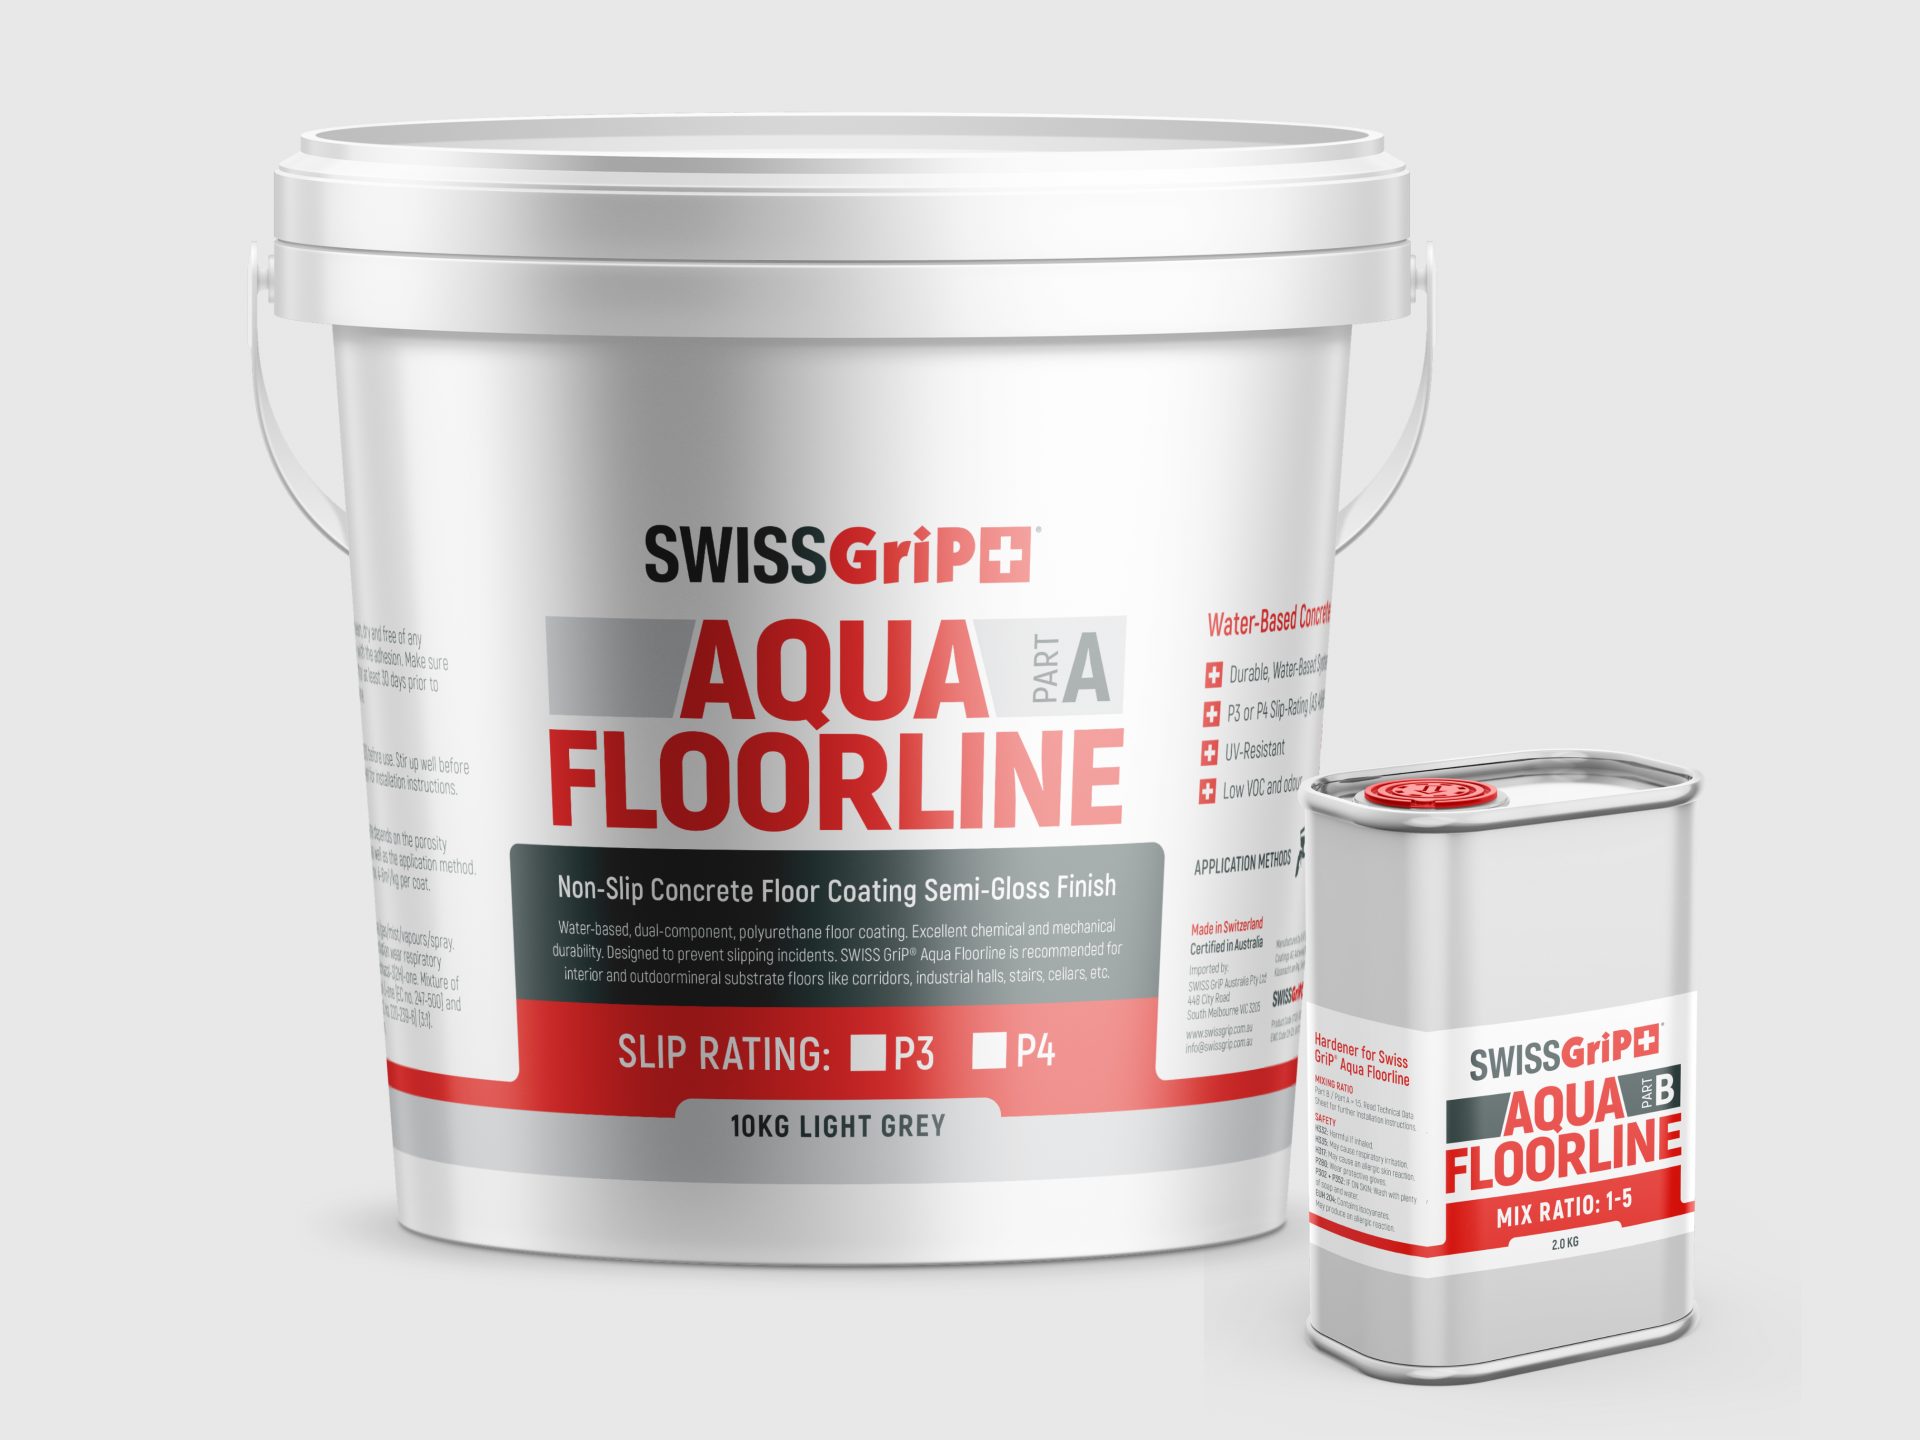 Swiss GriP Aqua Floorline